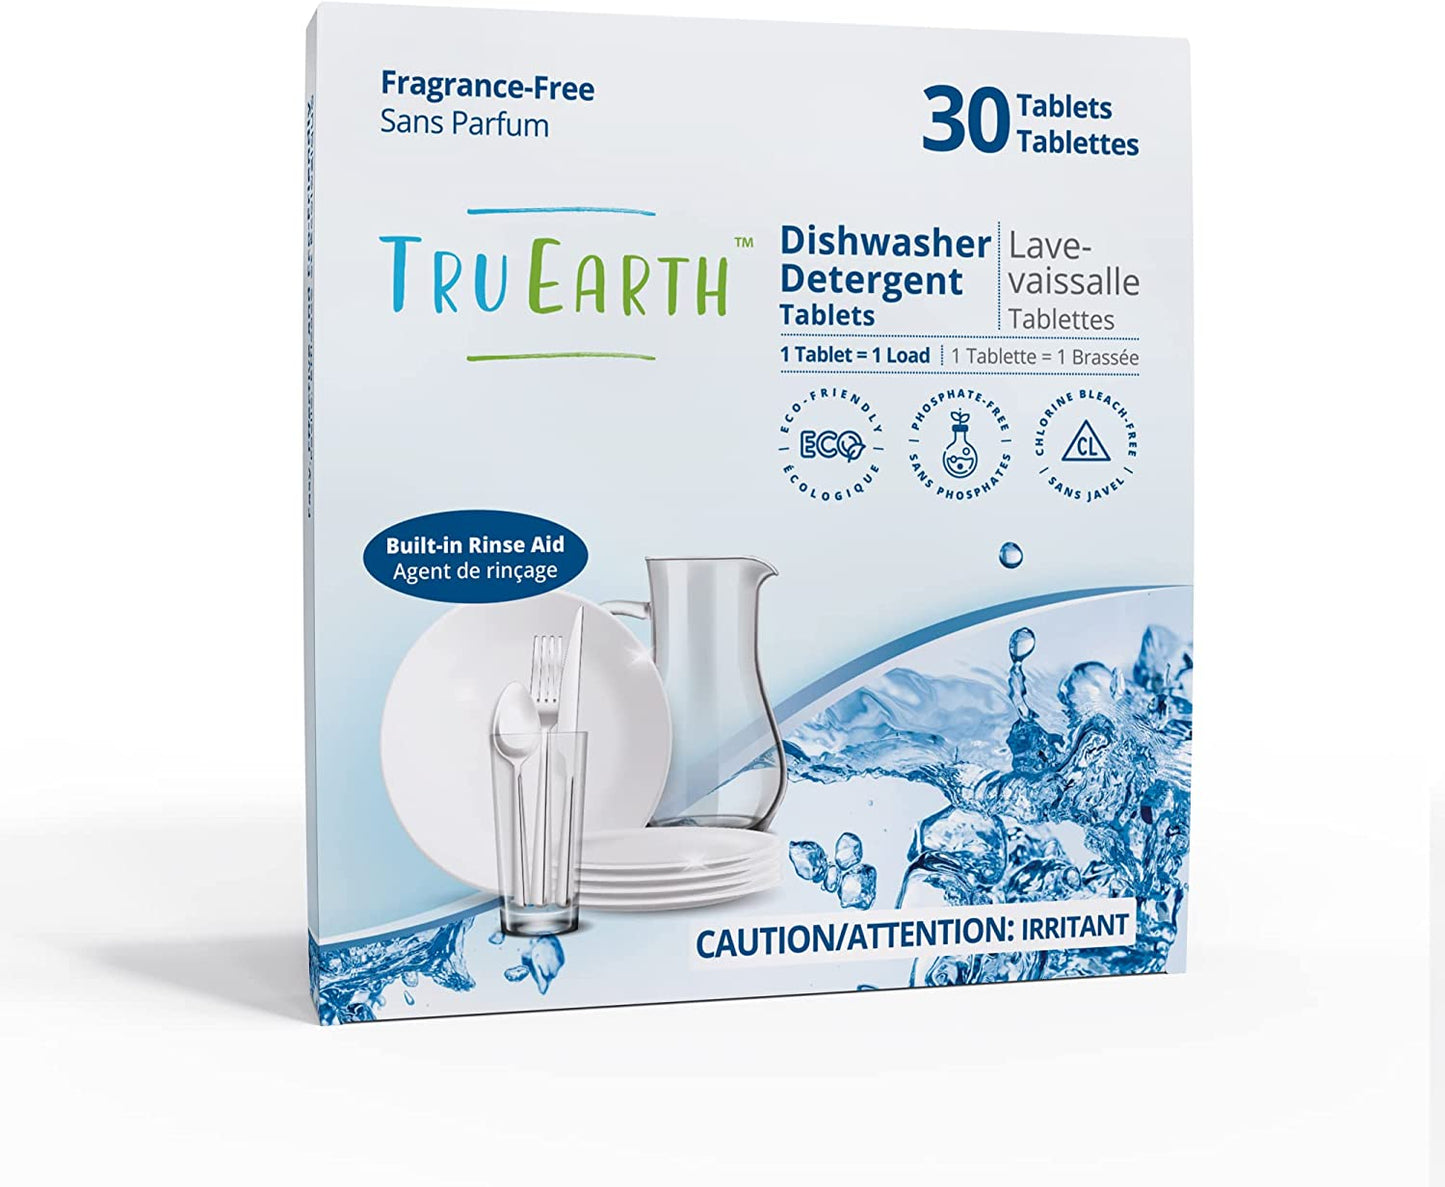 Tru Earth Dishwasher Detergent Tablets - 30 Tablets